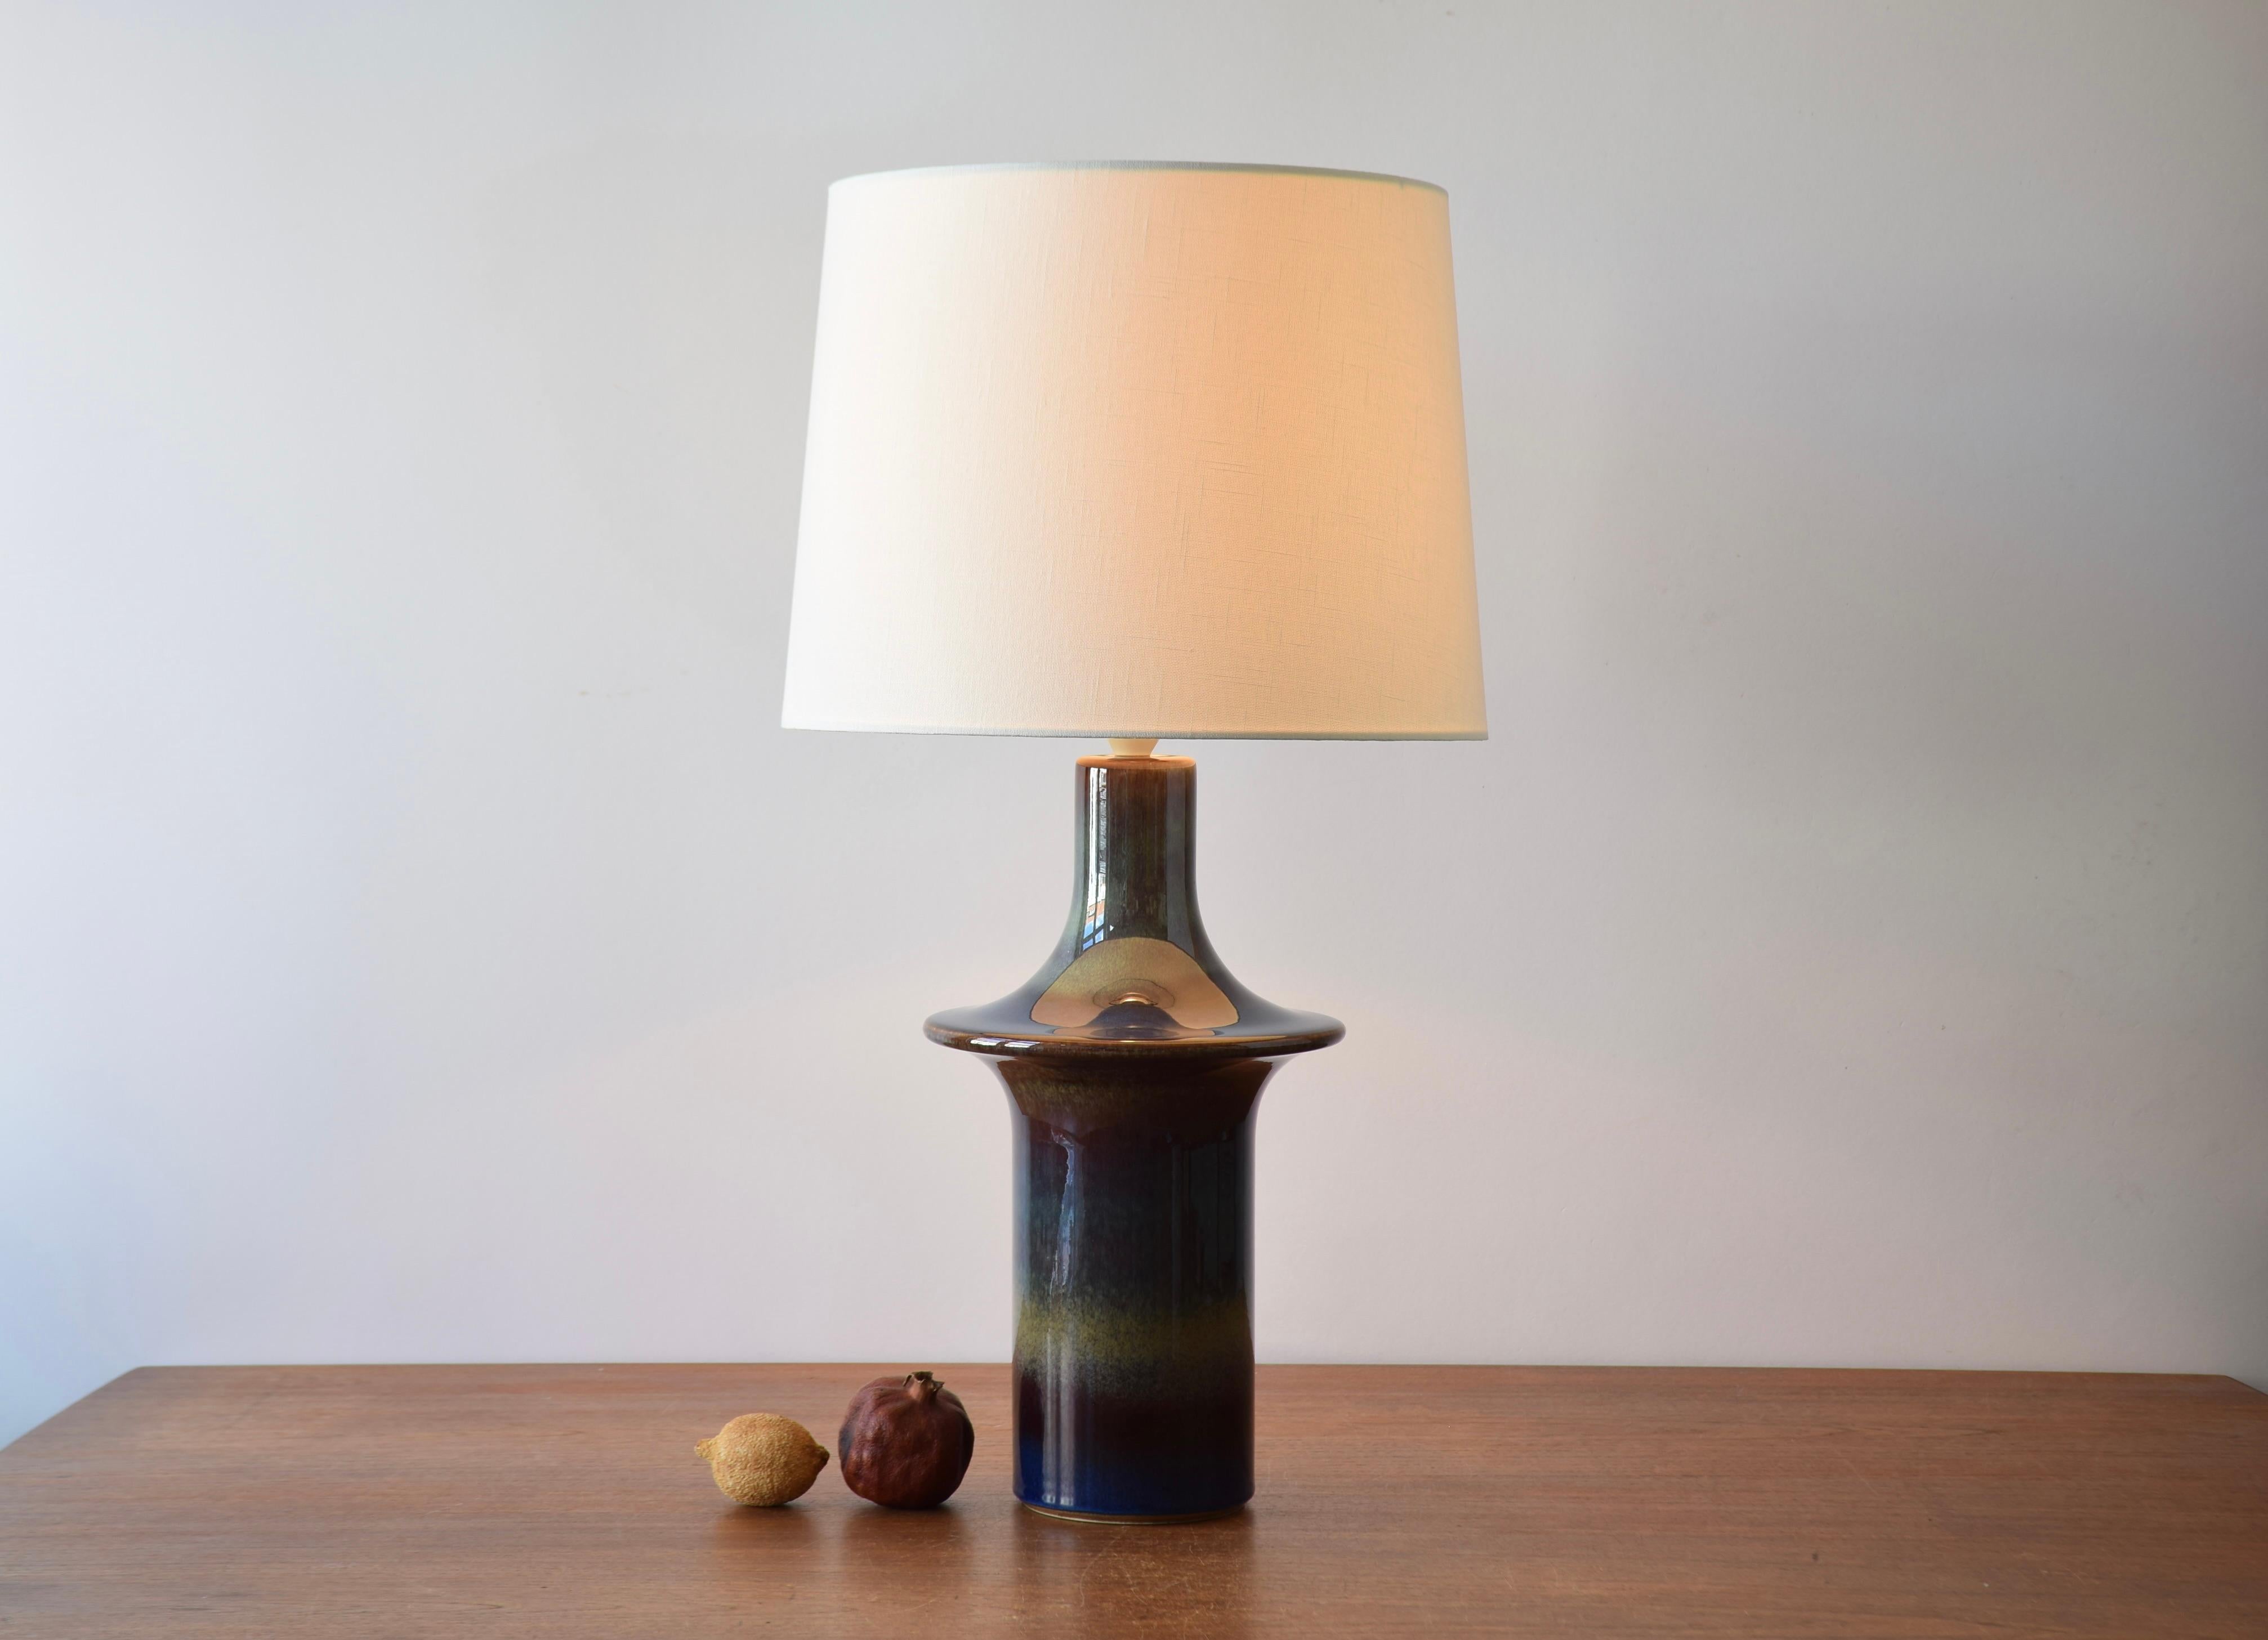 Lampe de table sculpturale danoise en forme d'ovni fabriquée par Søholm Stentøj. Le design est attribué à Einar Johansen. Fabriqué vers les années 1960.

La lampe est décorée d'une glaçure brillante avec un magnifique jeu de couleurs bleu foncé,